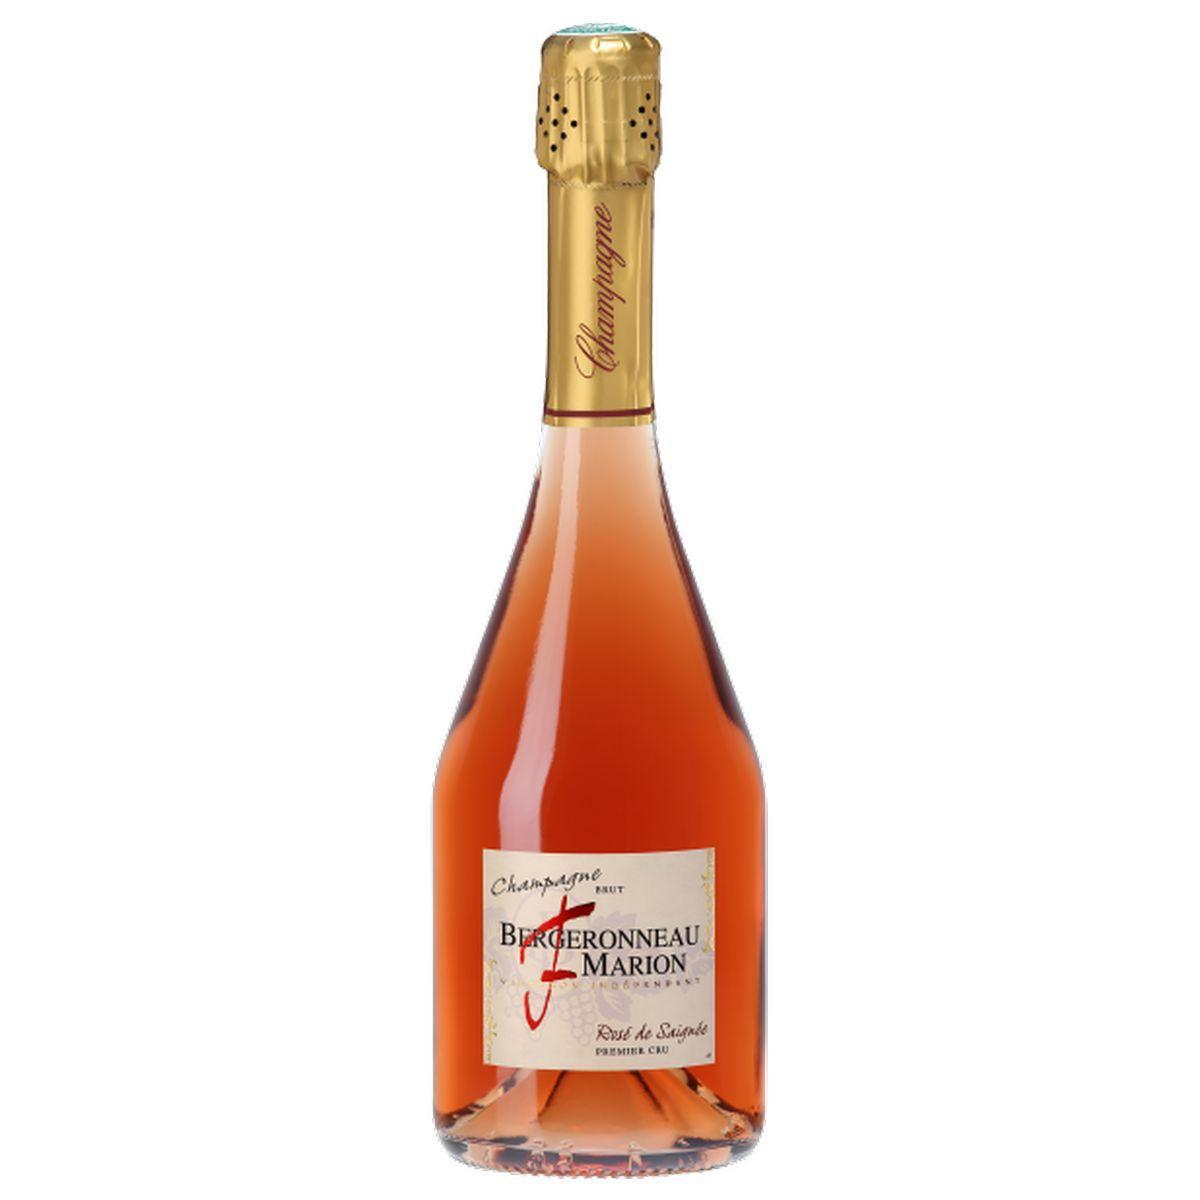 bergeronneau marion champagne brut rosé de saignée premier cru